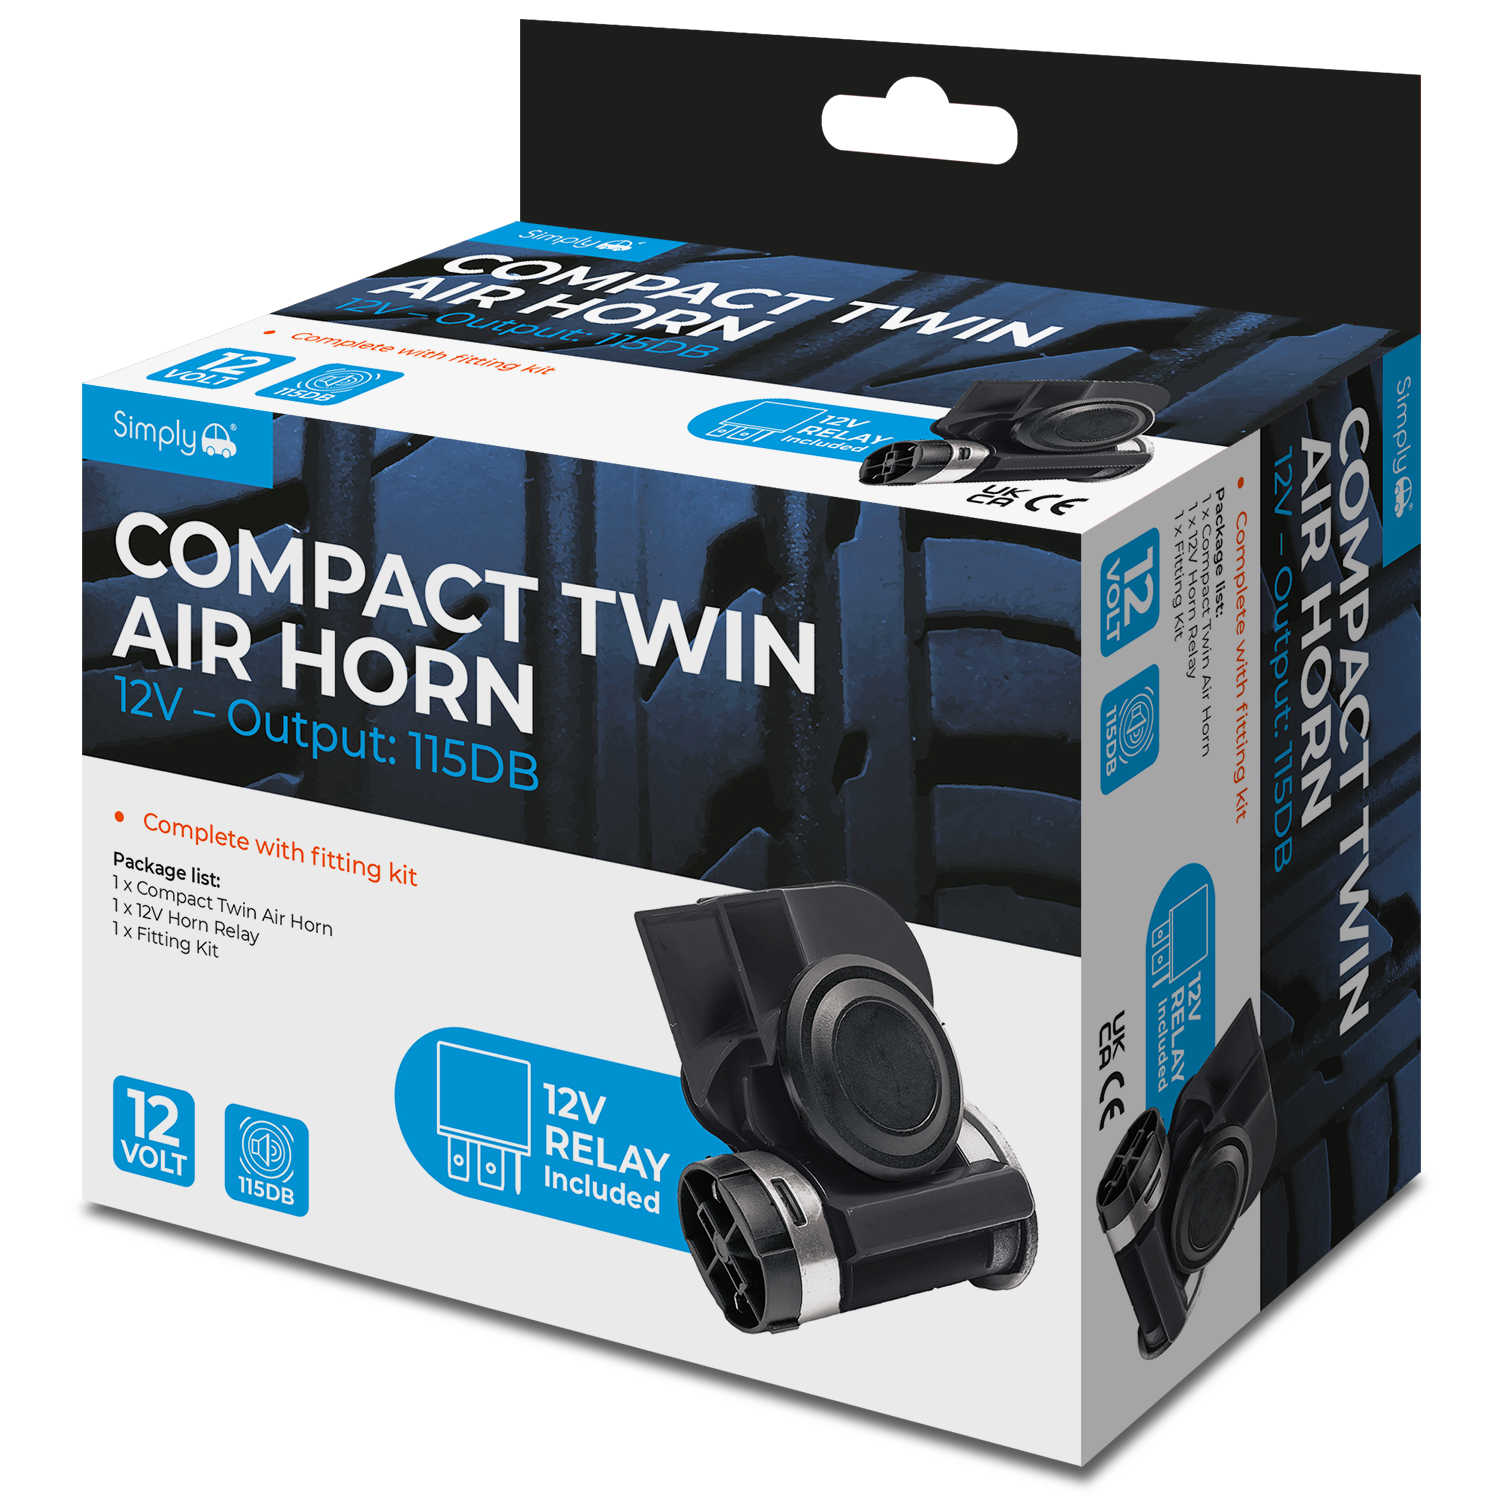 Simply Auto 12V COMPACT AIR HORN - HN54